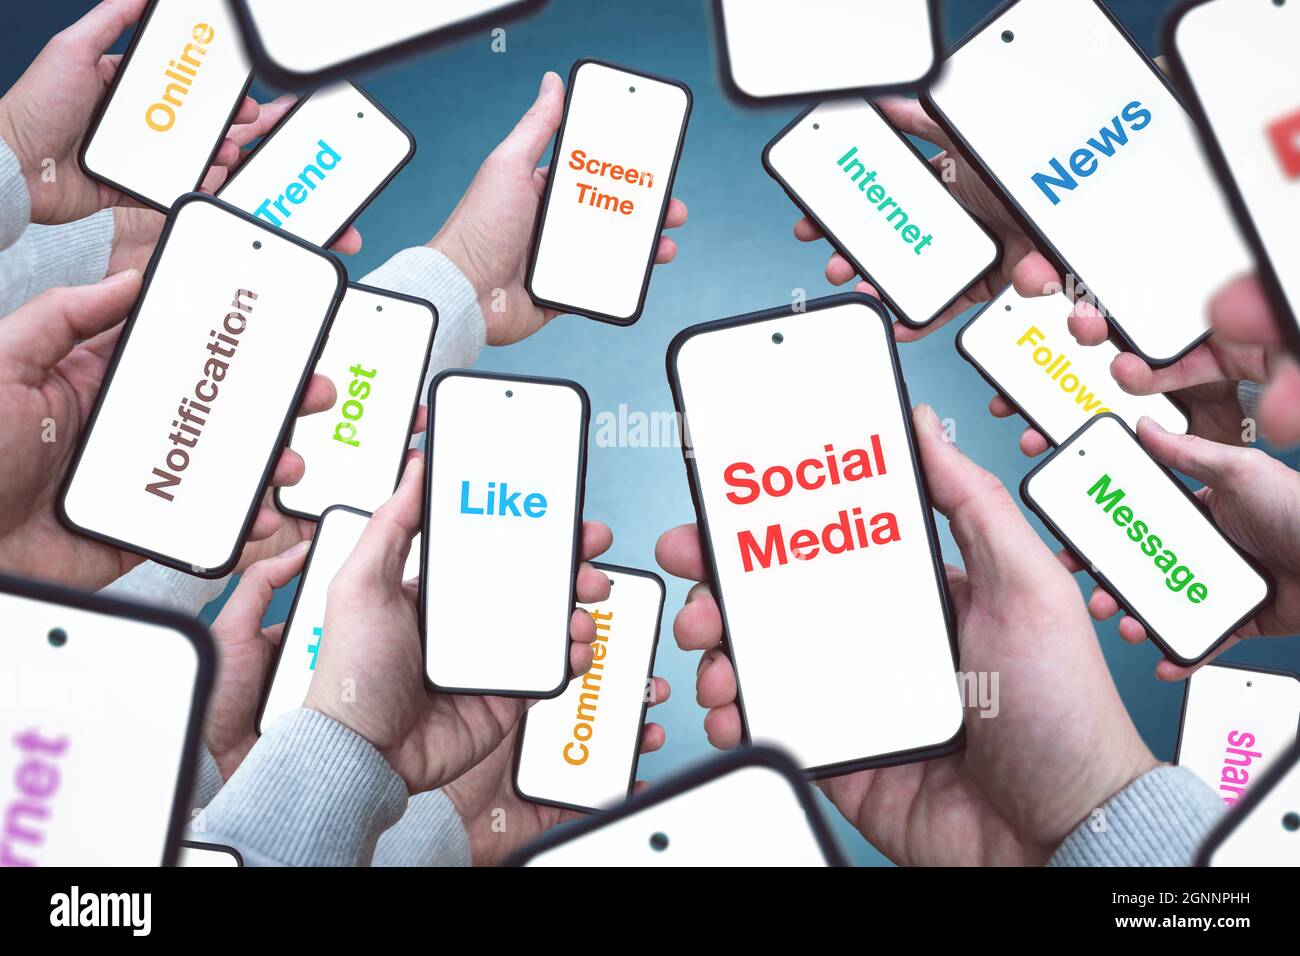 Viele Smartphone-Bildschirme mit Internetbuzzwords Stockfoto